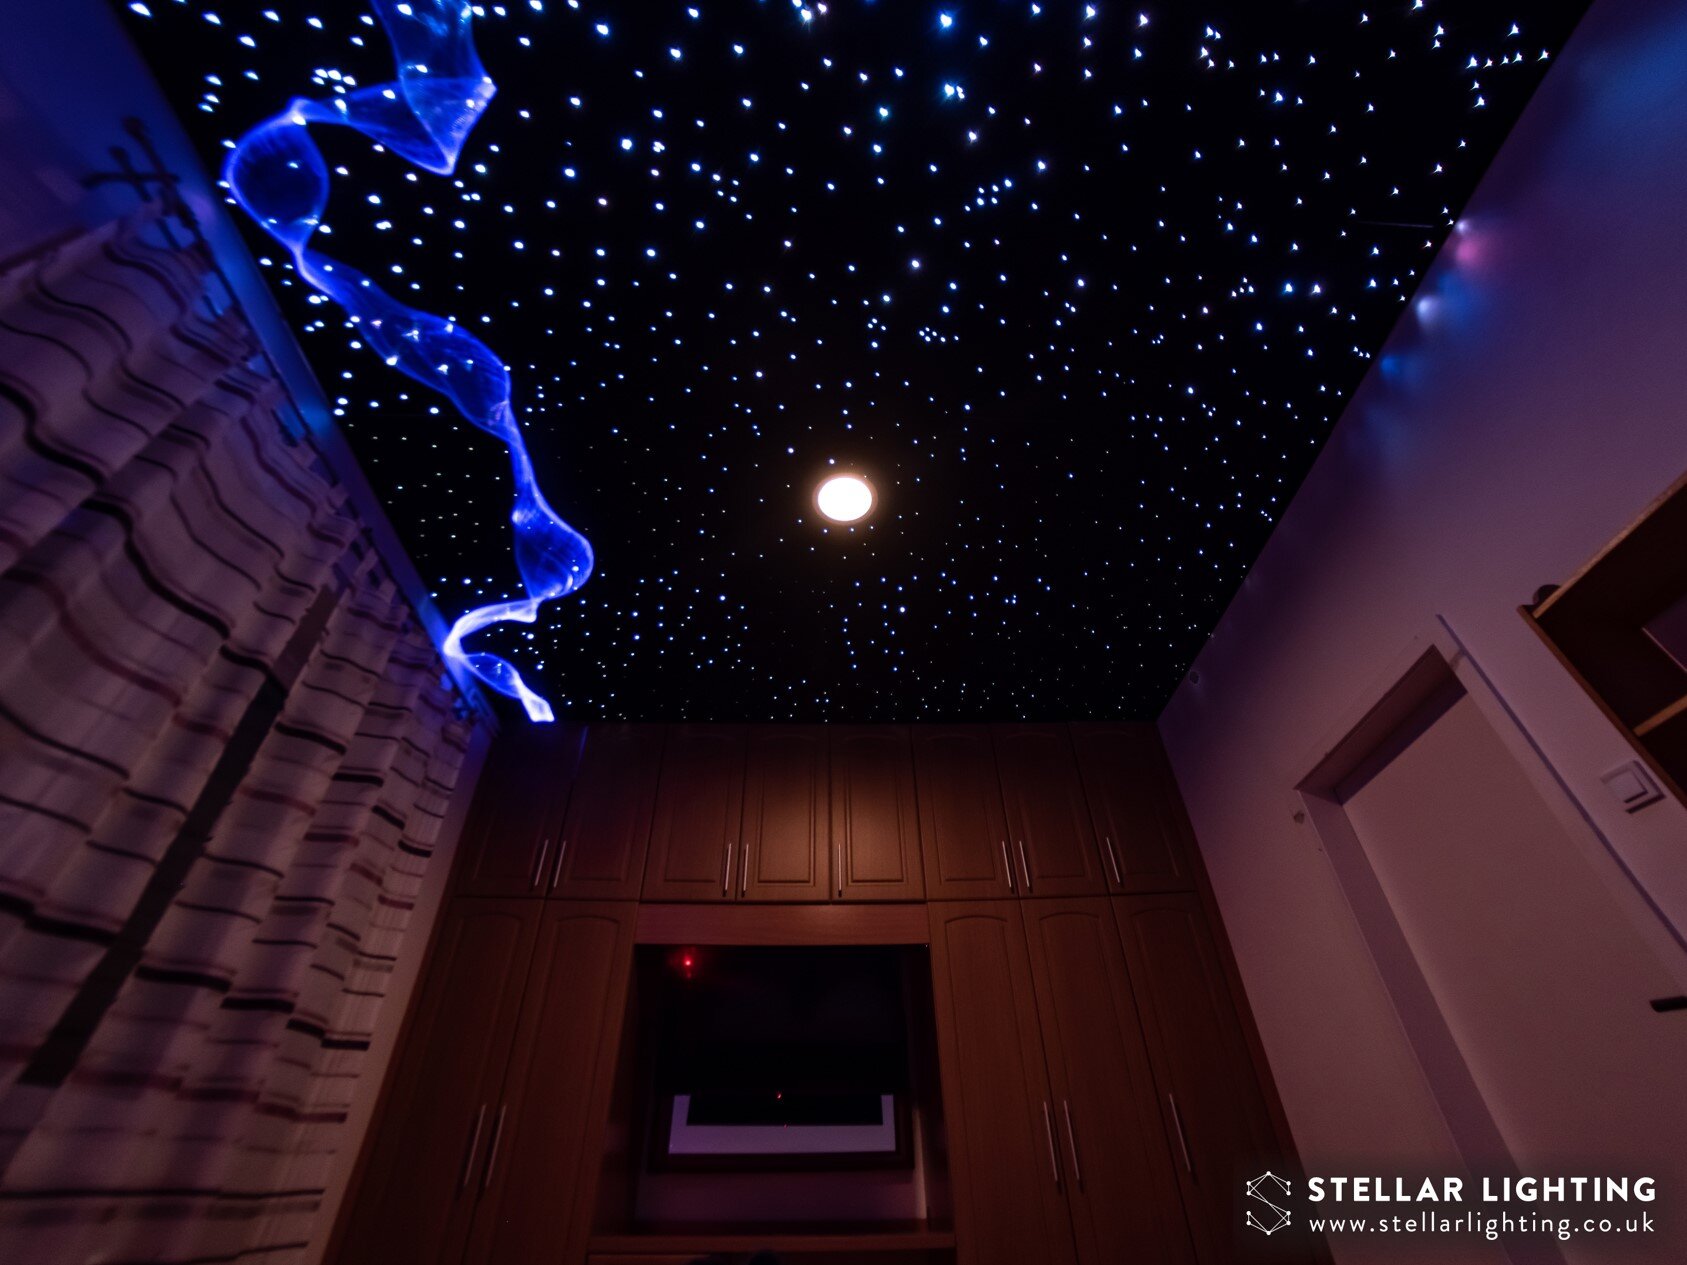 DIY pack of Fiber optic light star ceiling light led optical fiber chandeliers 